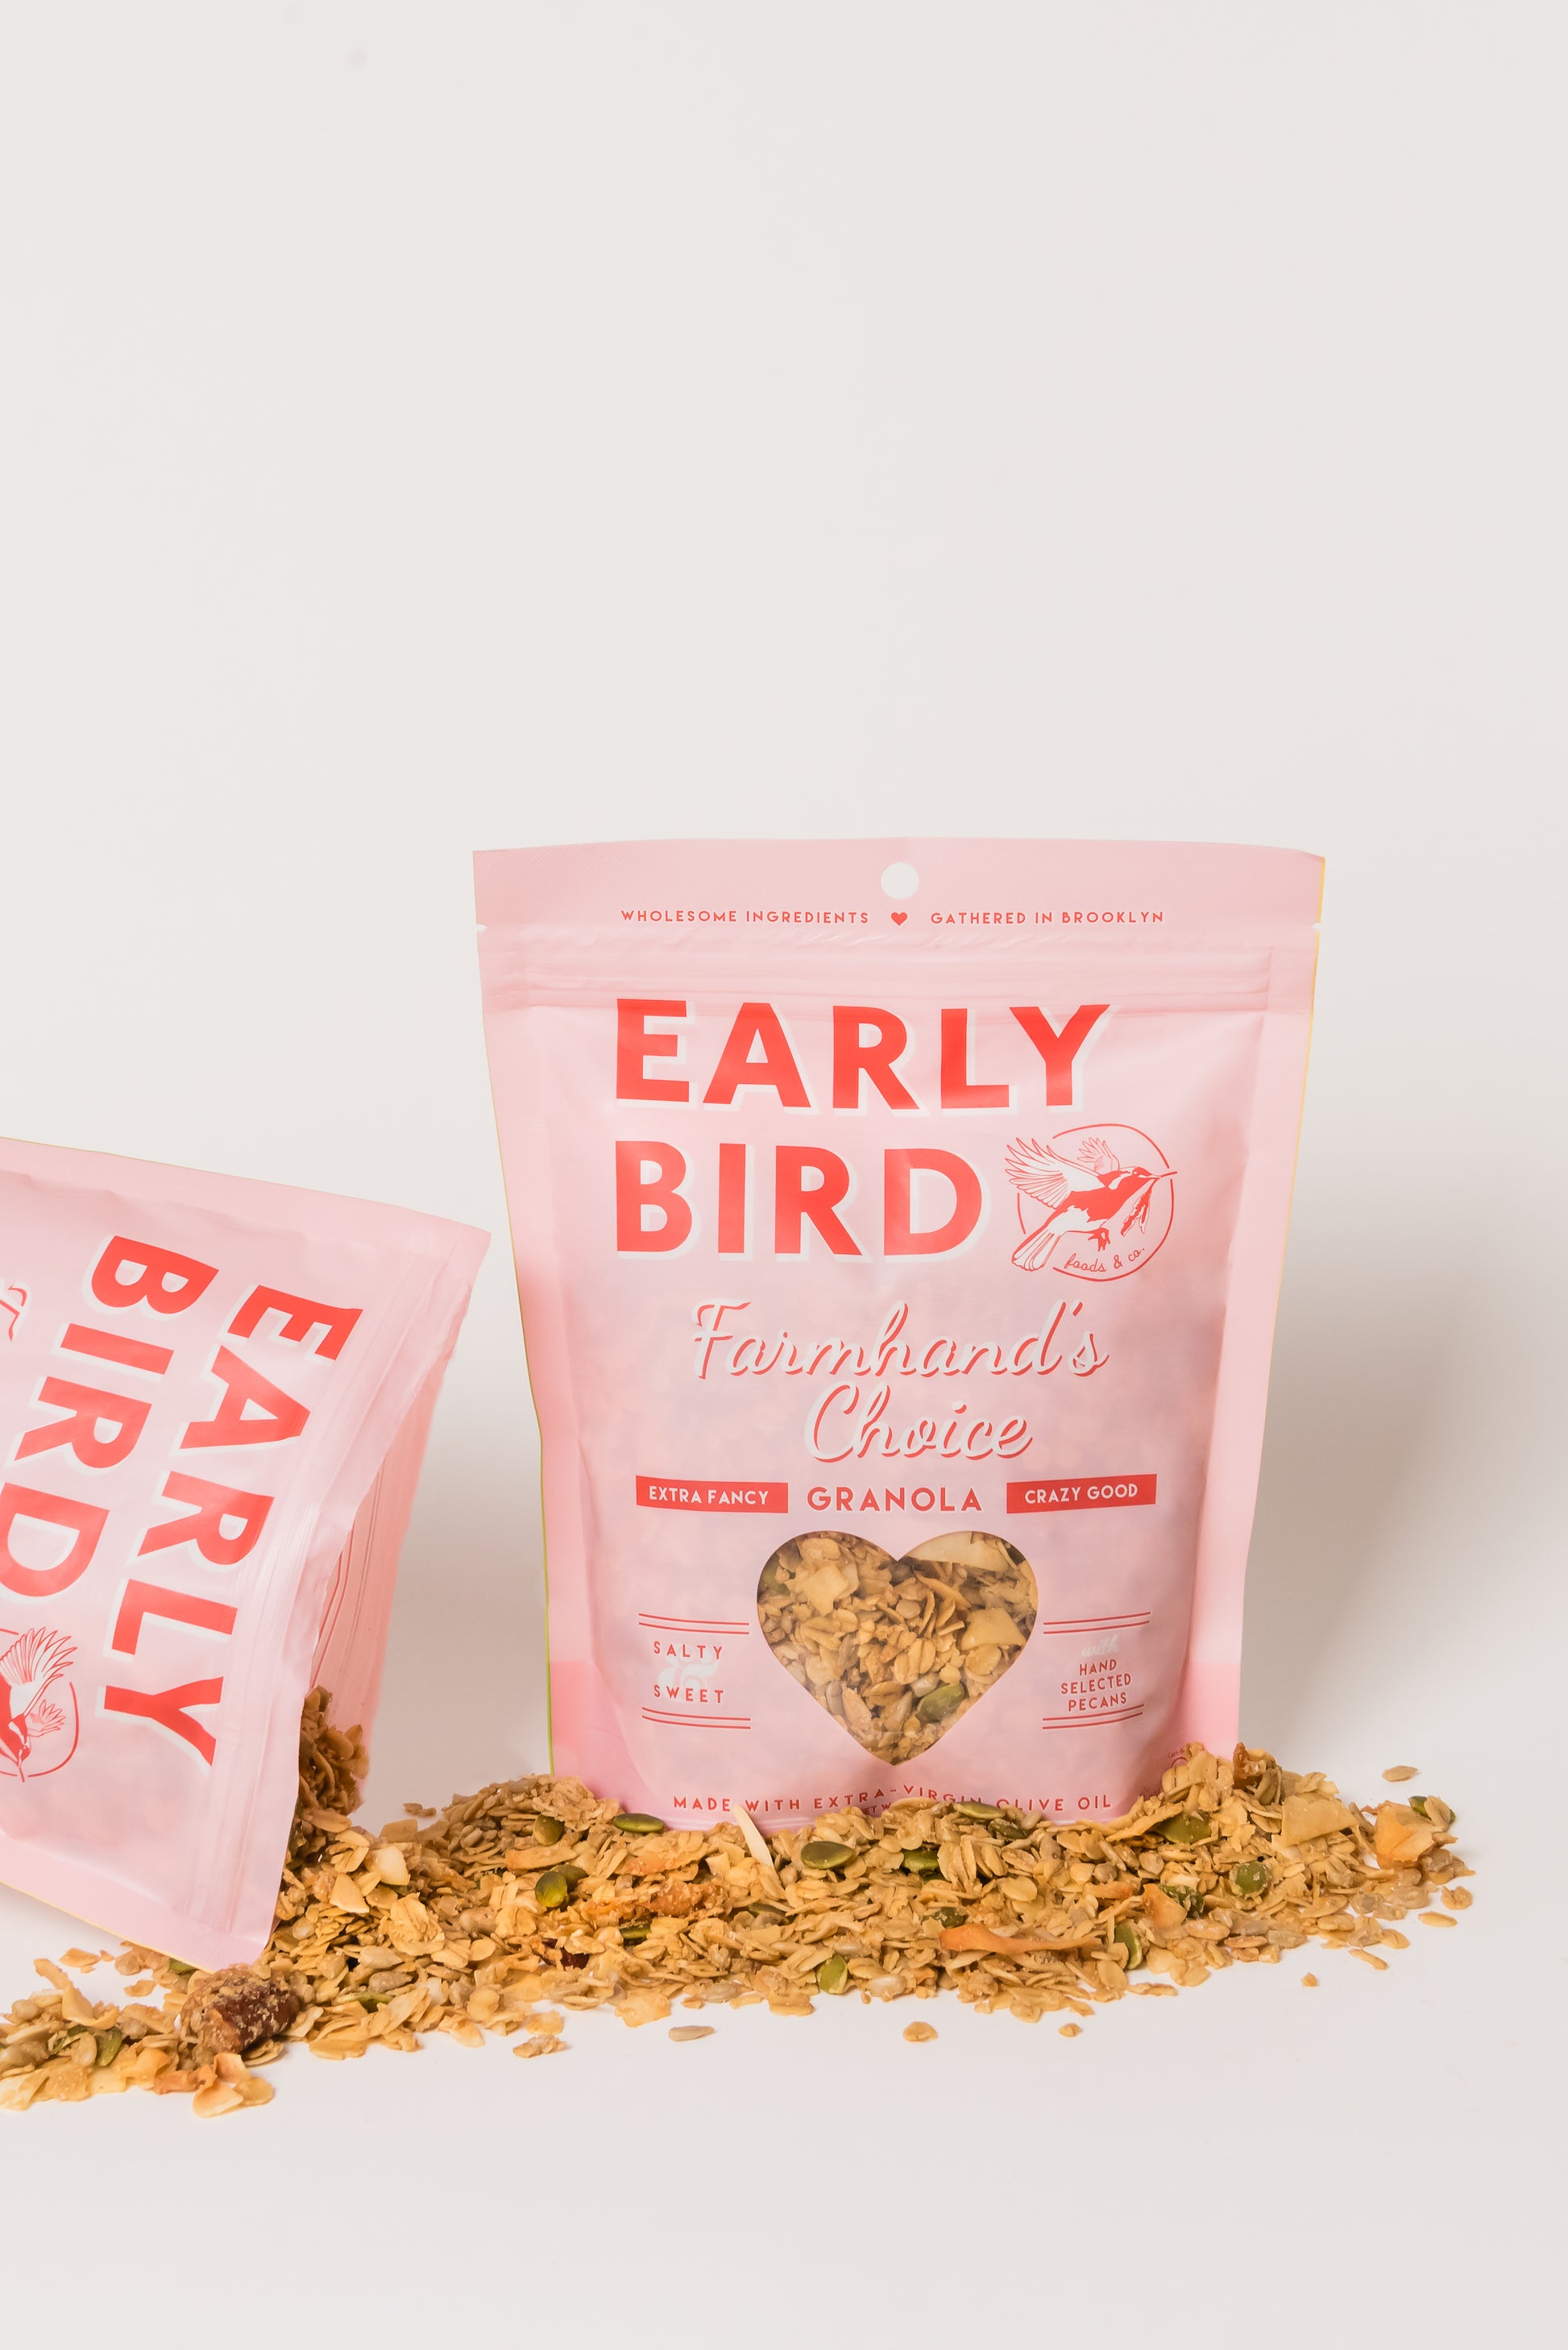 FARMHAND'S CHOICE - Early Bird Foods & Co.